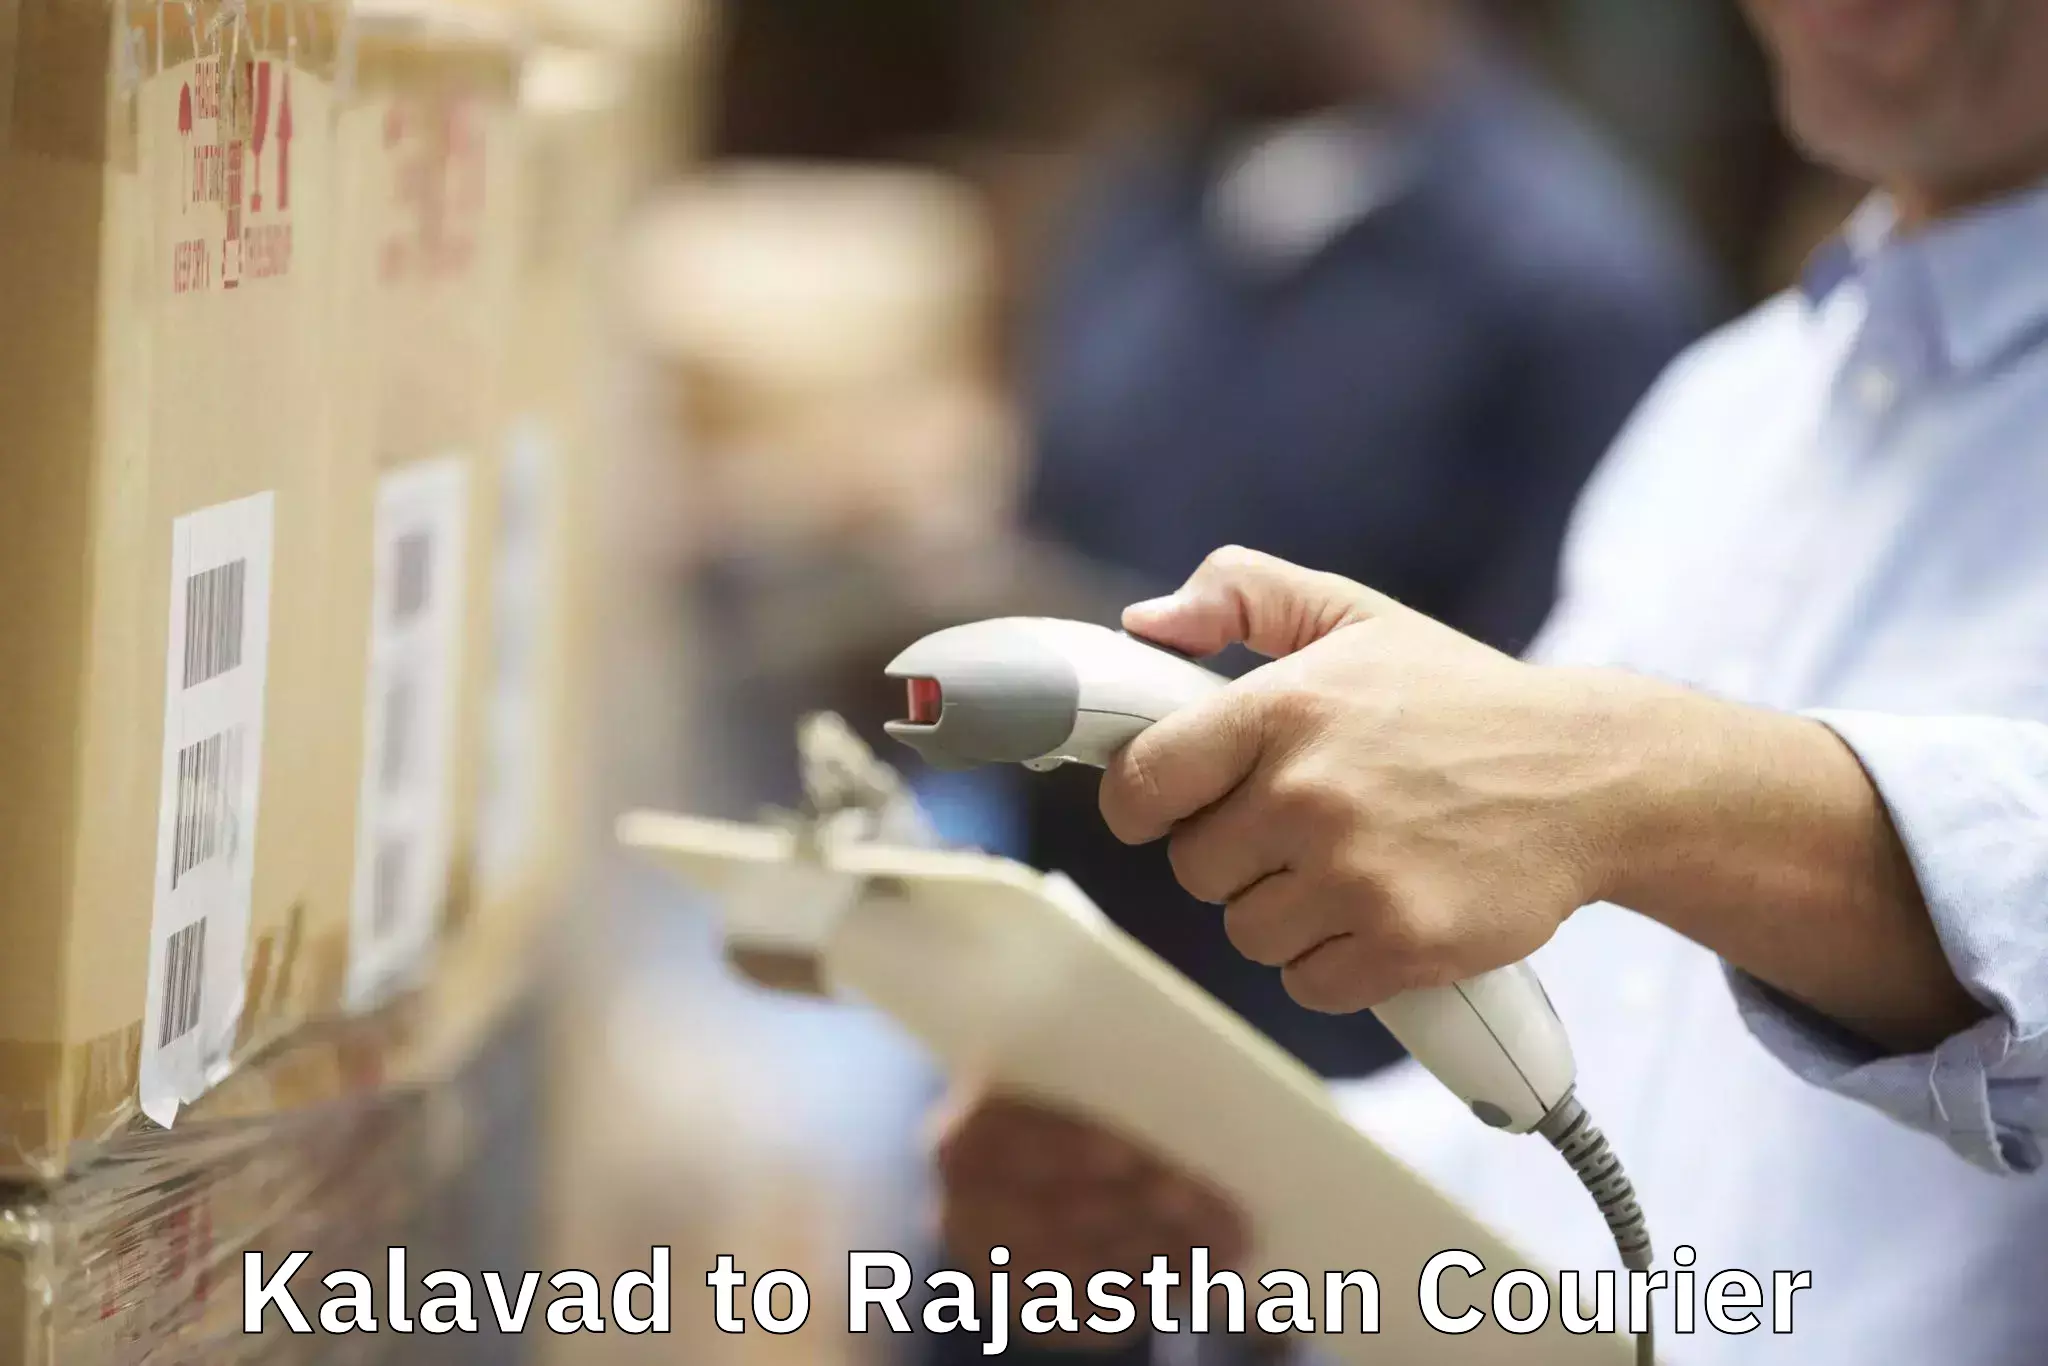 Furniture transport experts Kalavad to Rajasthan